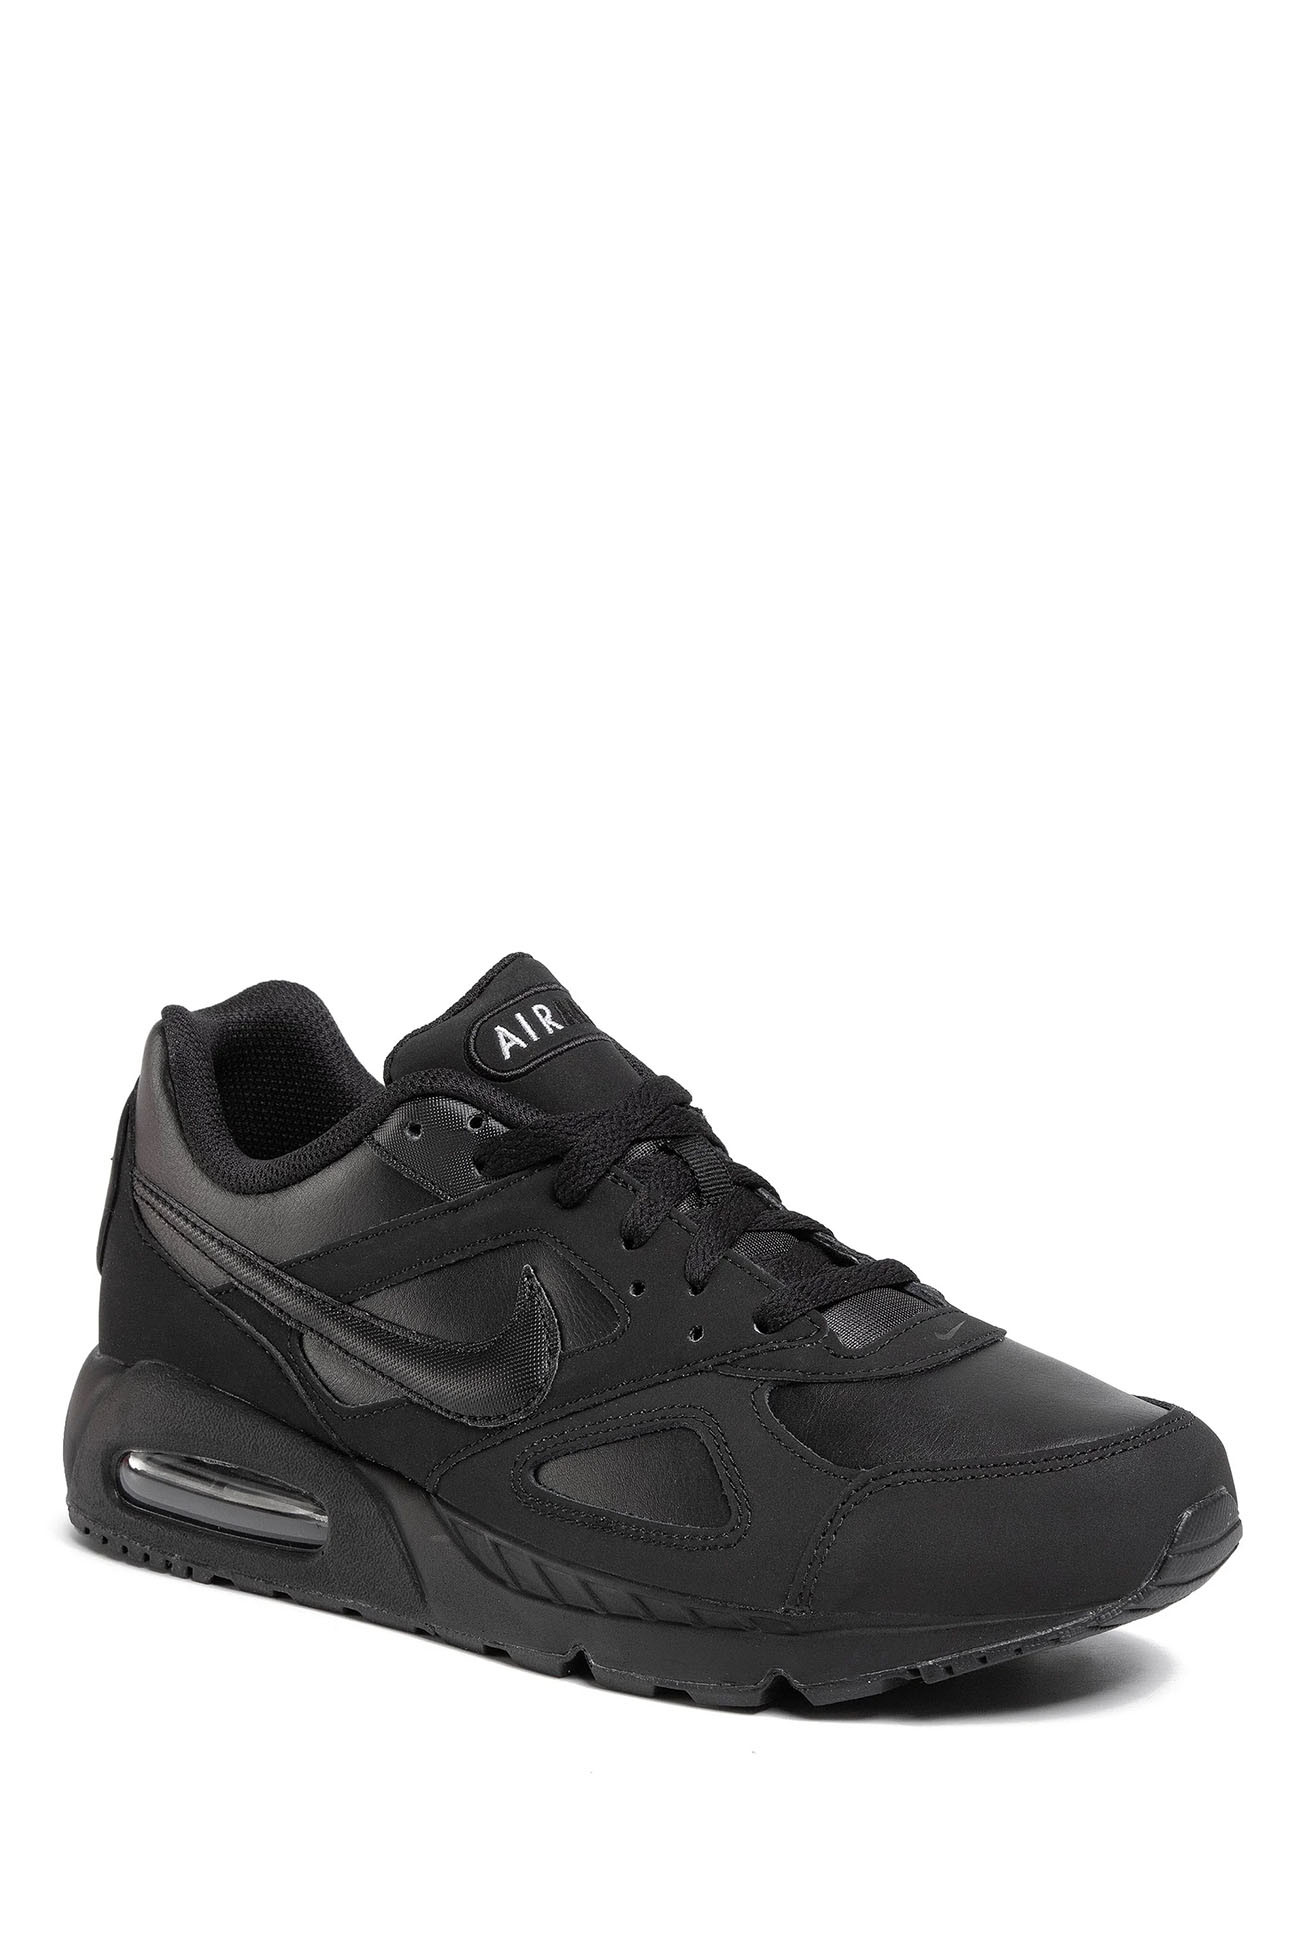 Кросівки чоловічі Nike Air Max IVO Leather Shoe чорні 580520-002 изображение 2